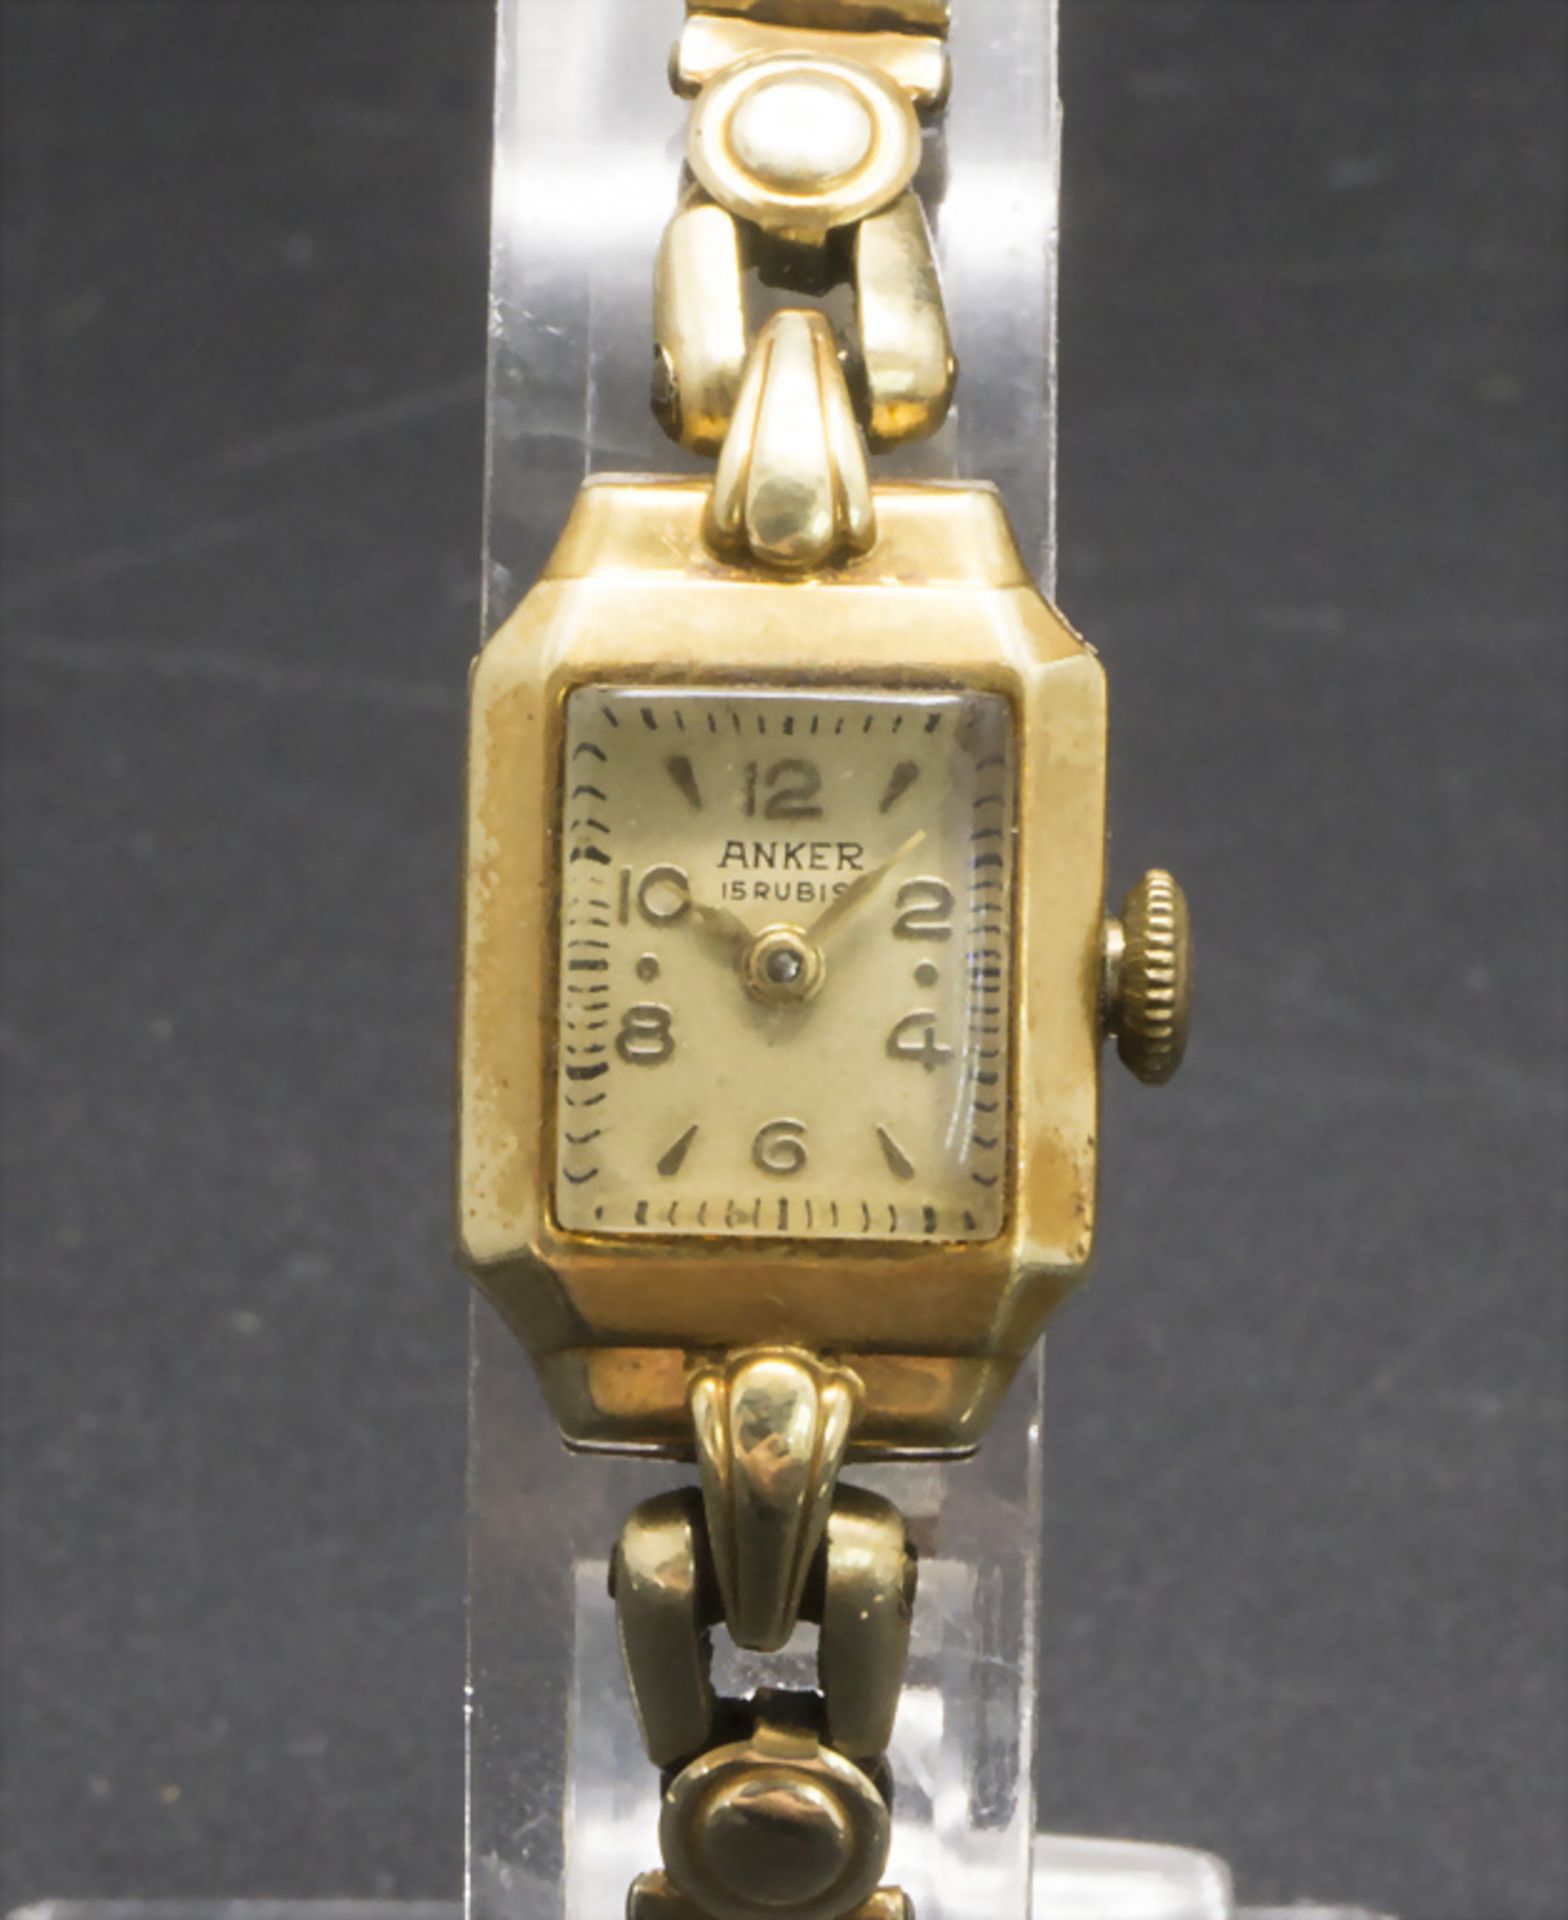 Damenarmbanduhr in Gold / A ladies wristwatch in 14k gold, ANKER, um 1950